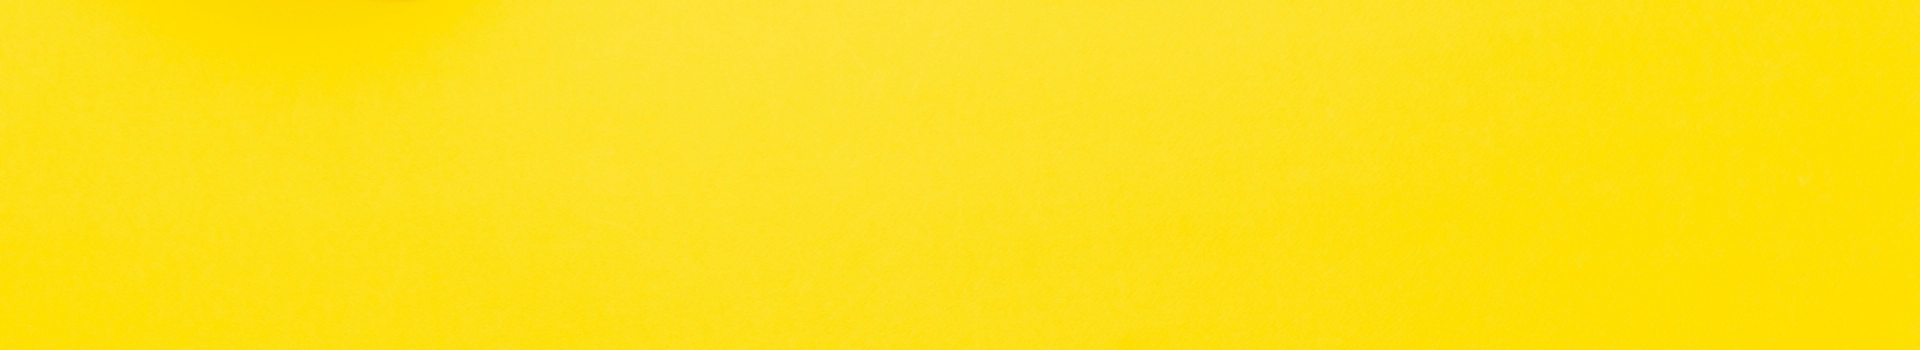 żółty banner